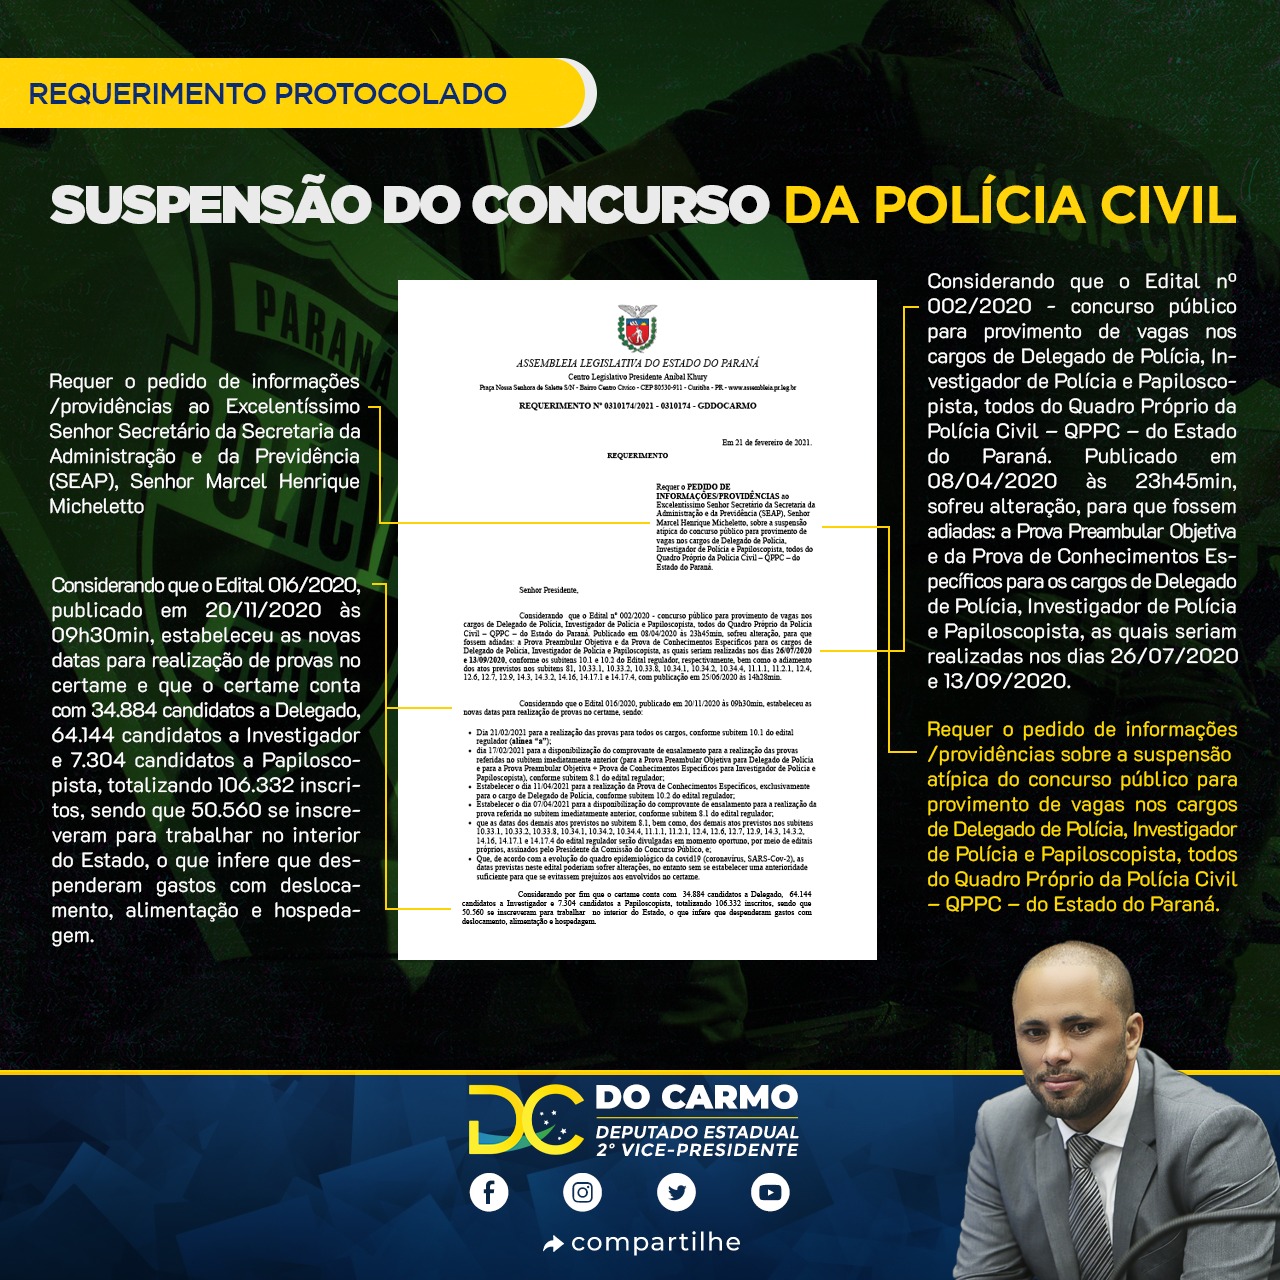 Concurso Polícia Civil : deputado Do Carmo protocolou requerimento solicitando informações e providências